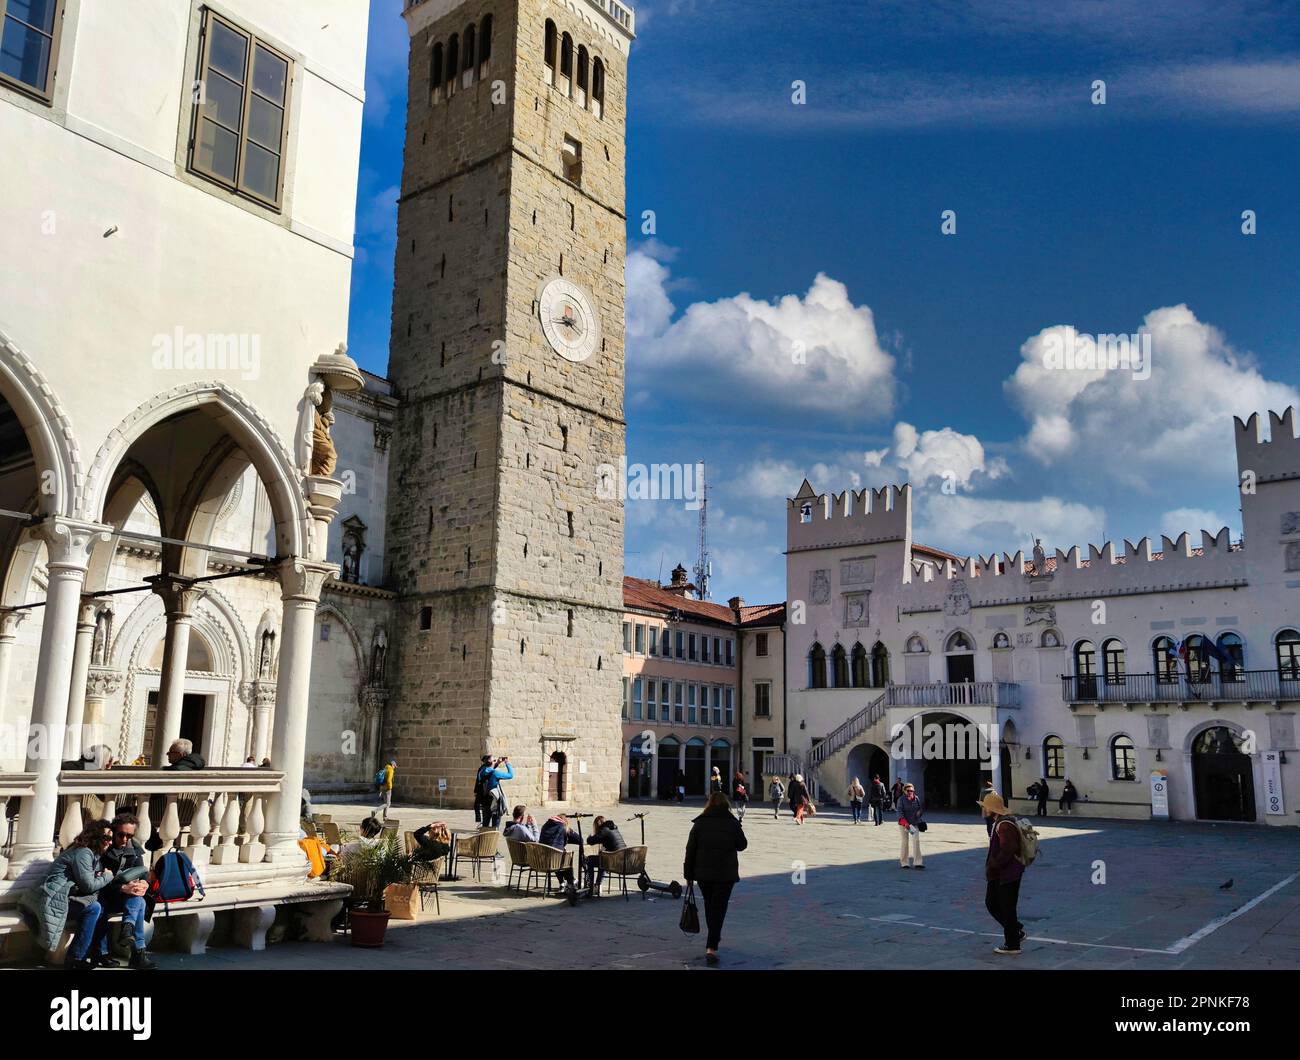 Piazza Tito la piazza principale di Capodistria, Slovenia, circondata da palazzi, campanile e cattedrale in stile architettonico veneziano Foto Stock